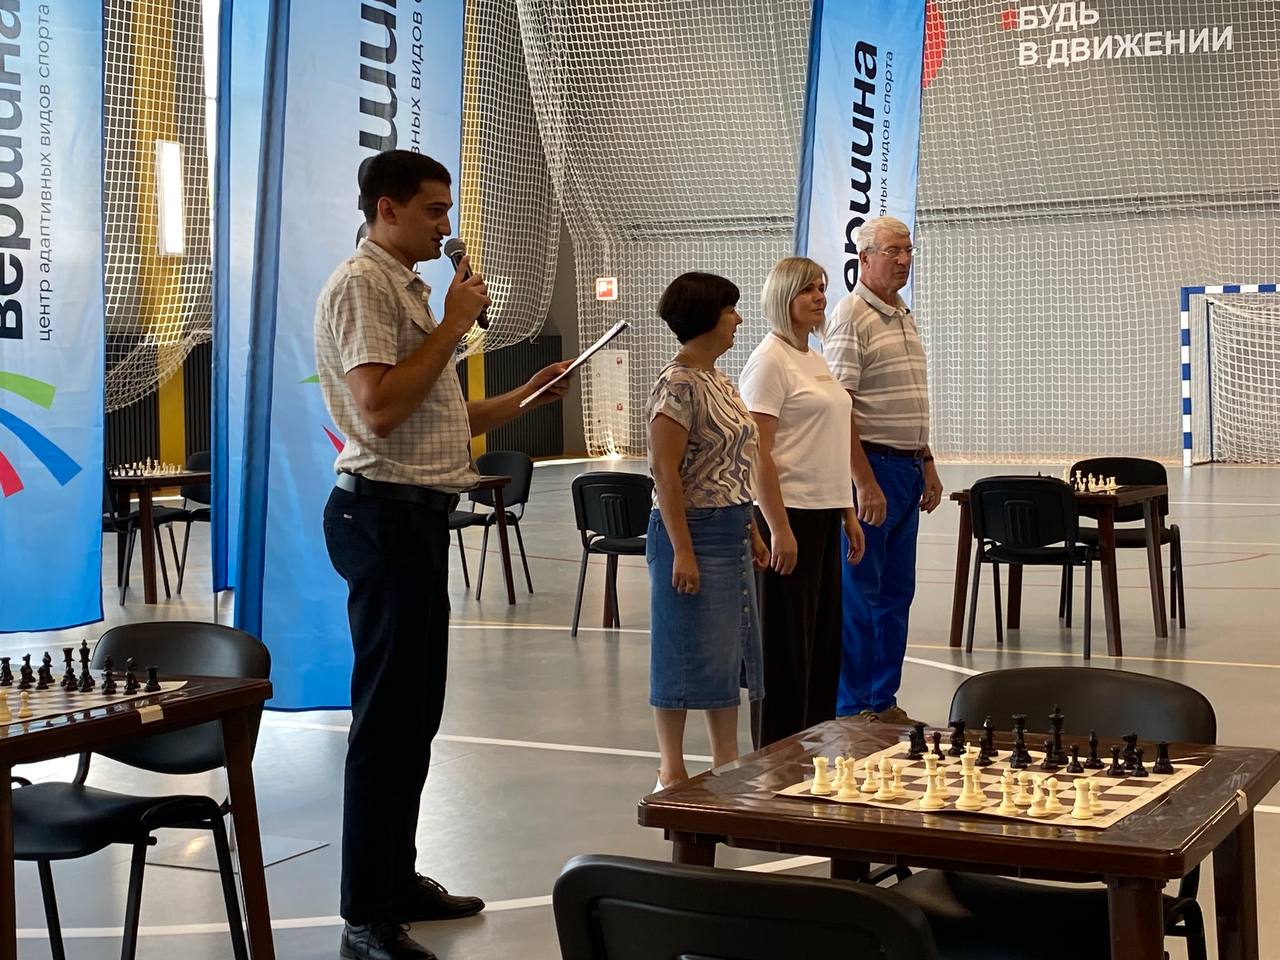 В Культурно-спортивном центре в Короче проходит инклюзивный турнир по шахматам в рамках Всероссийского летнего марафона «Сила России».